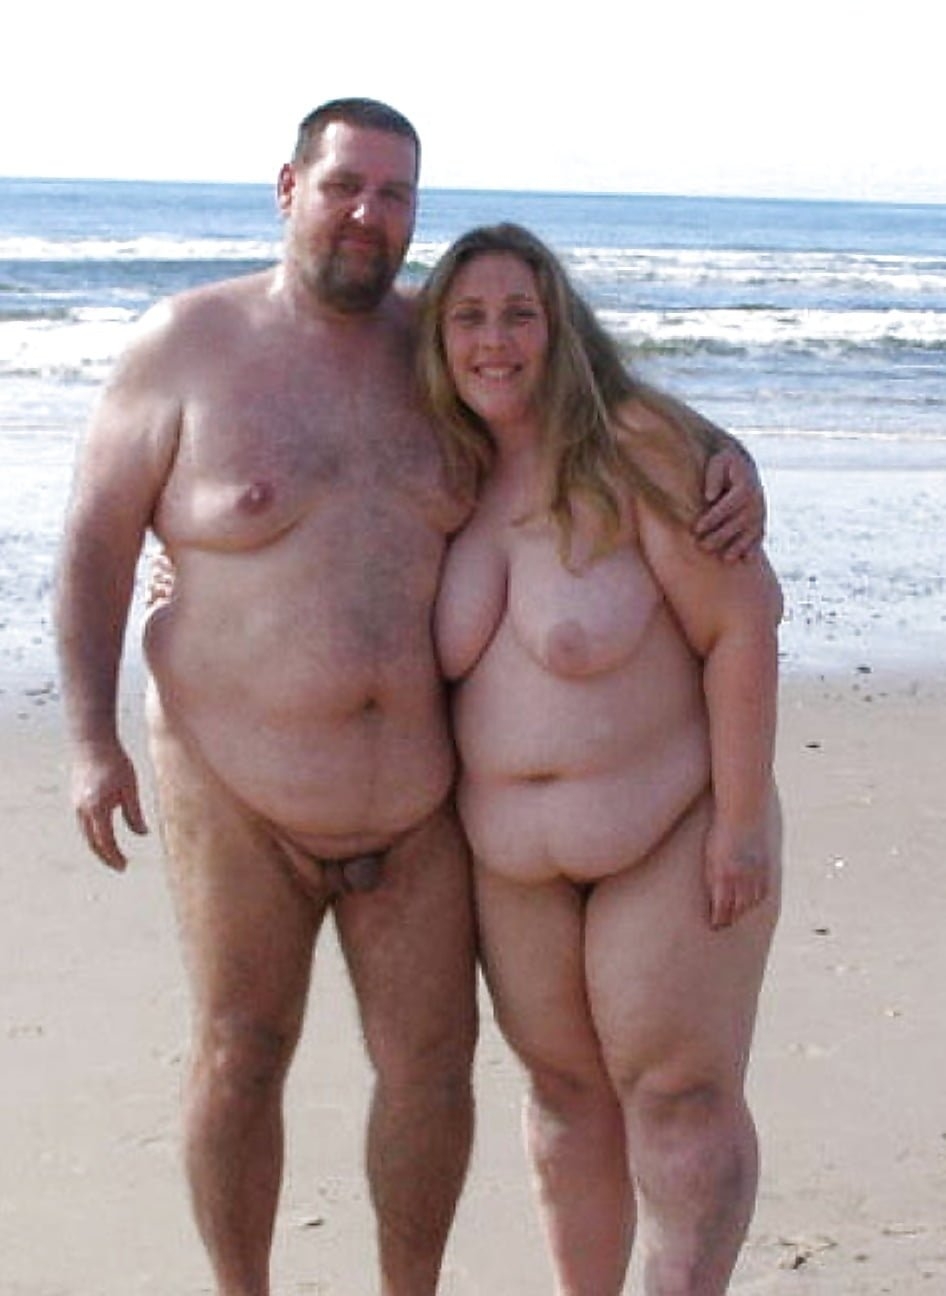 Жирный голый мужик (84 фото) - секс и порно